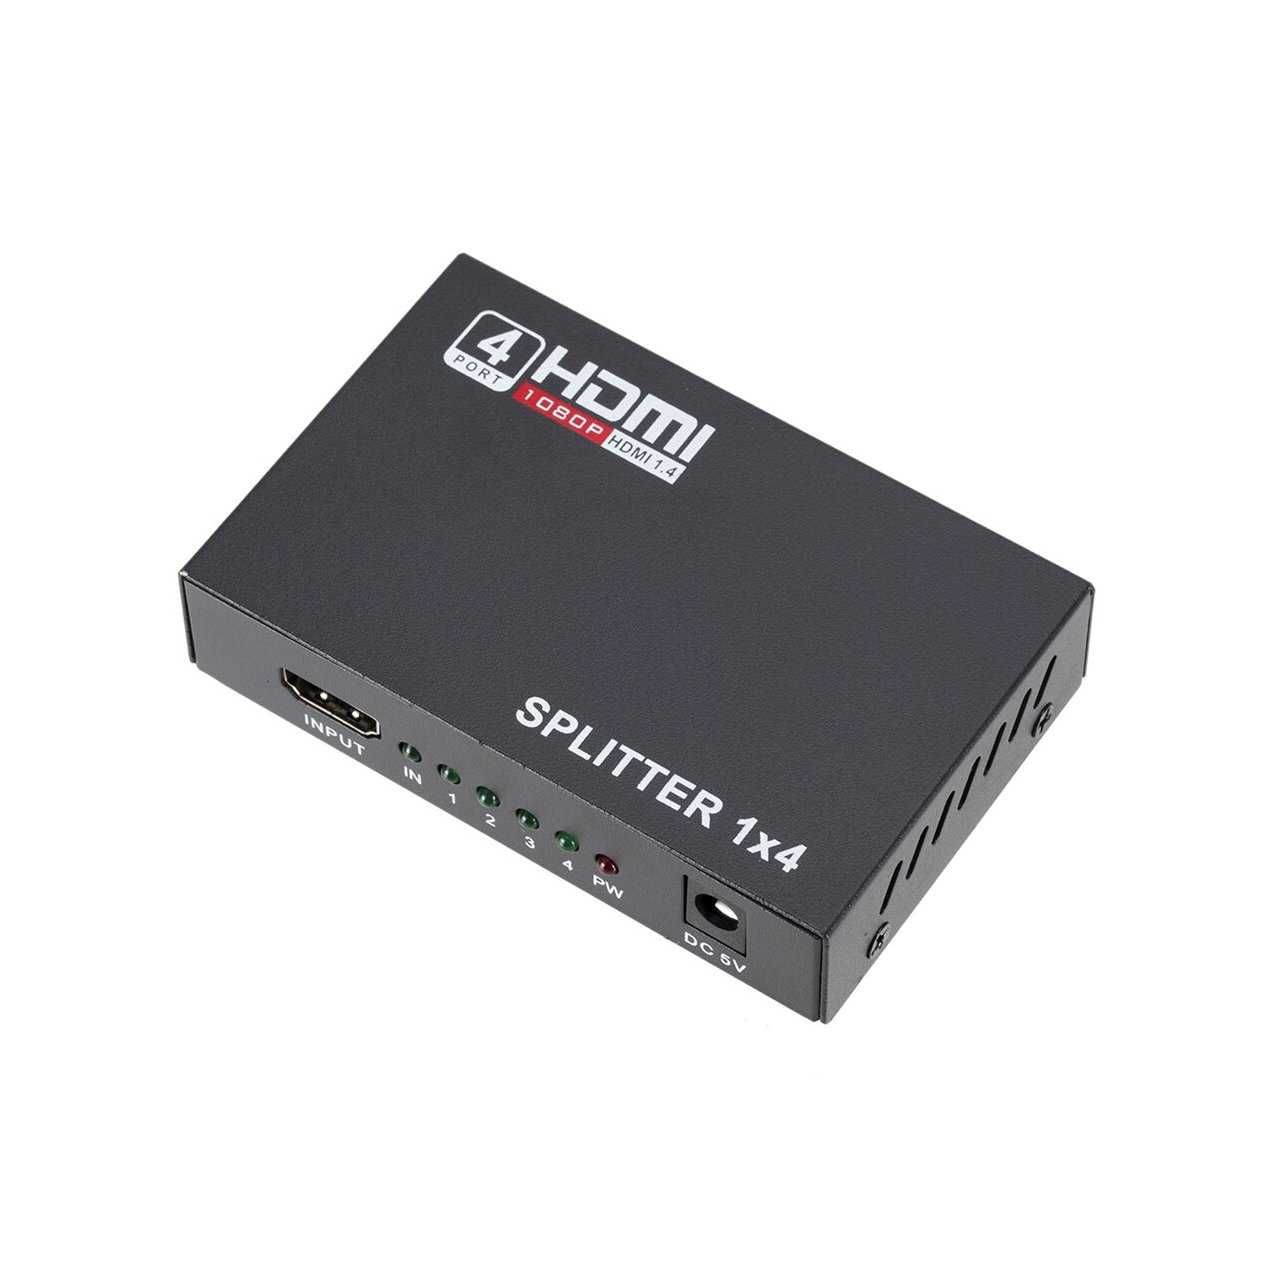 Сплиттер HDMI 1х4 1080p 3D 4 порта вер. 1,4